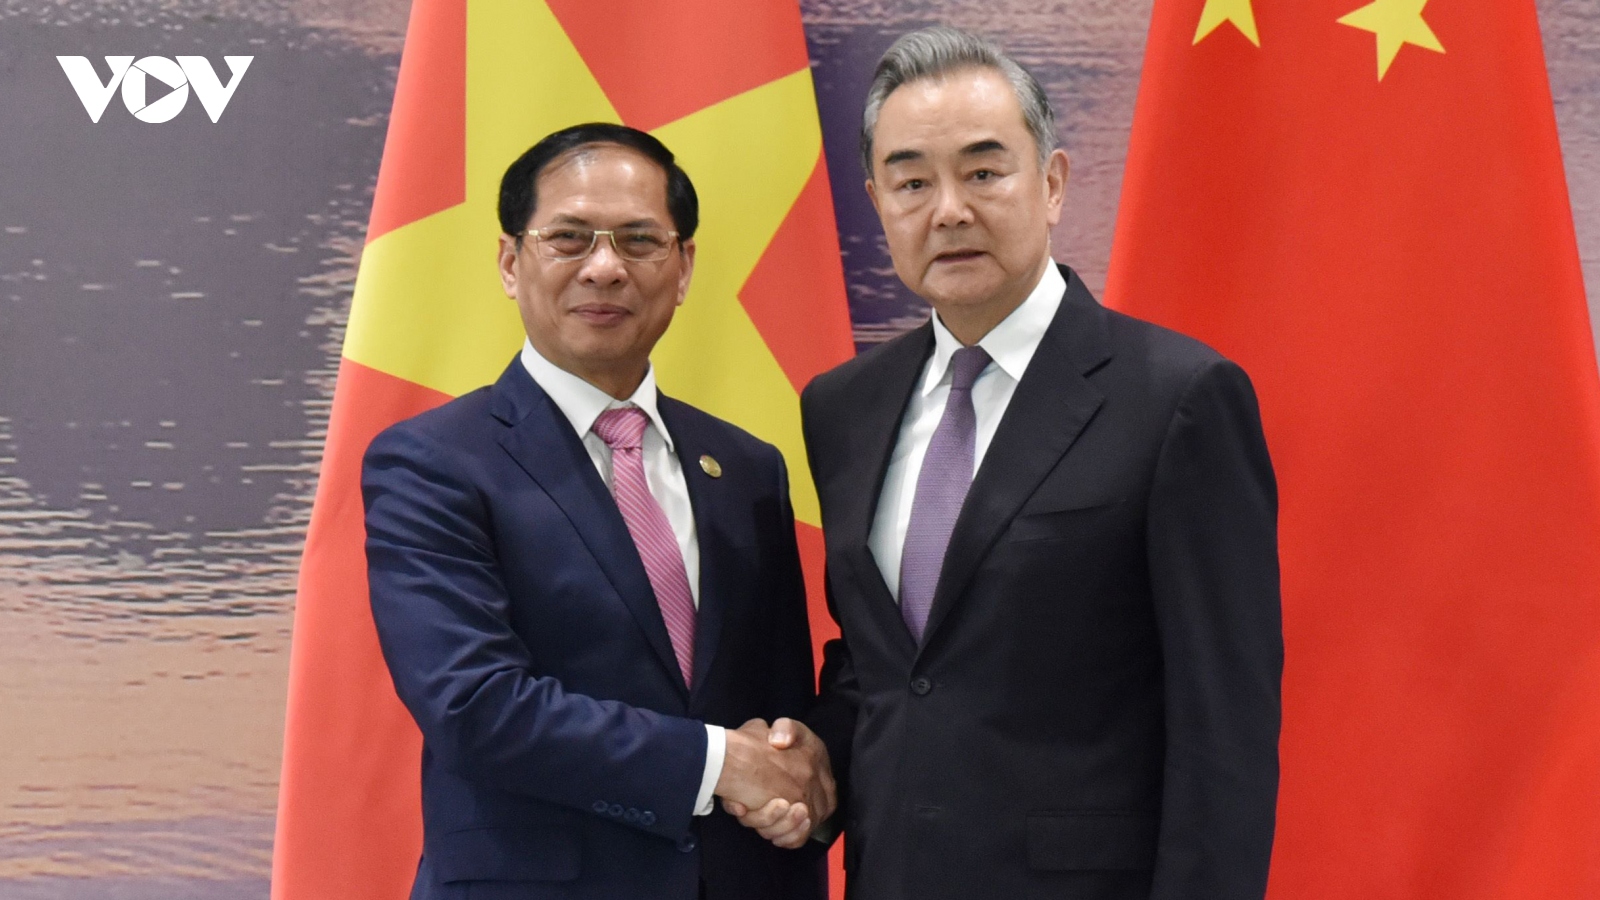 Bộ trưởng Bộ Ngoại giao Bùi Thanh Sơn hội đàm với Bộ trưởng Vương Nghị